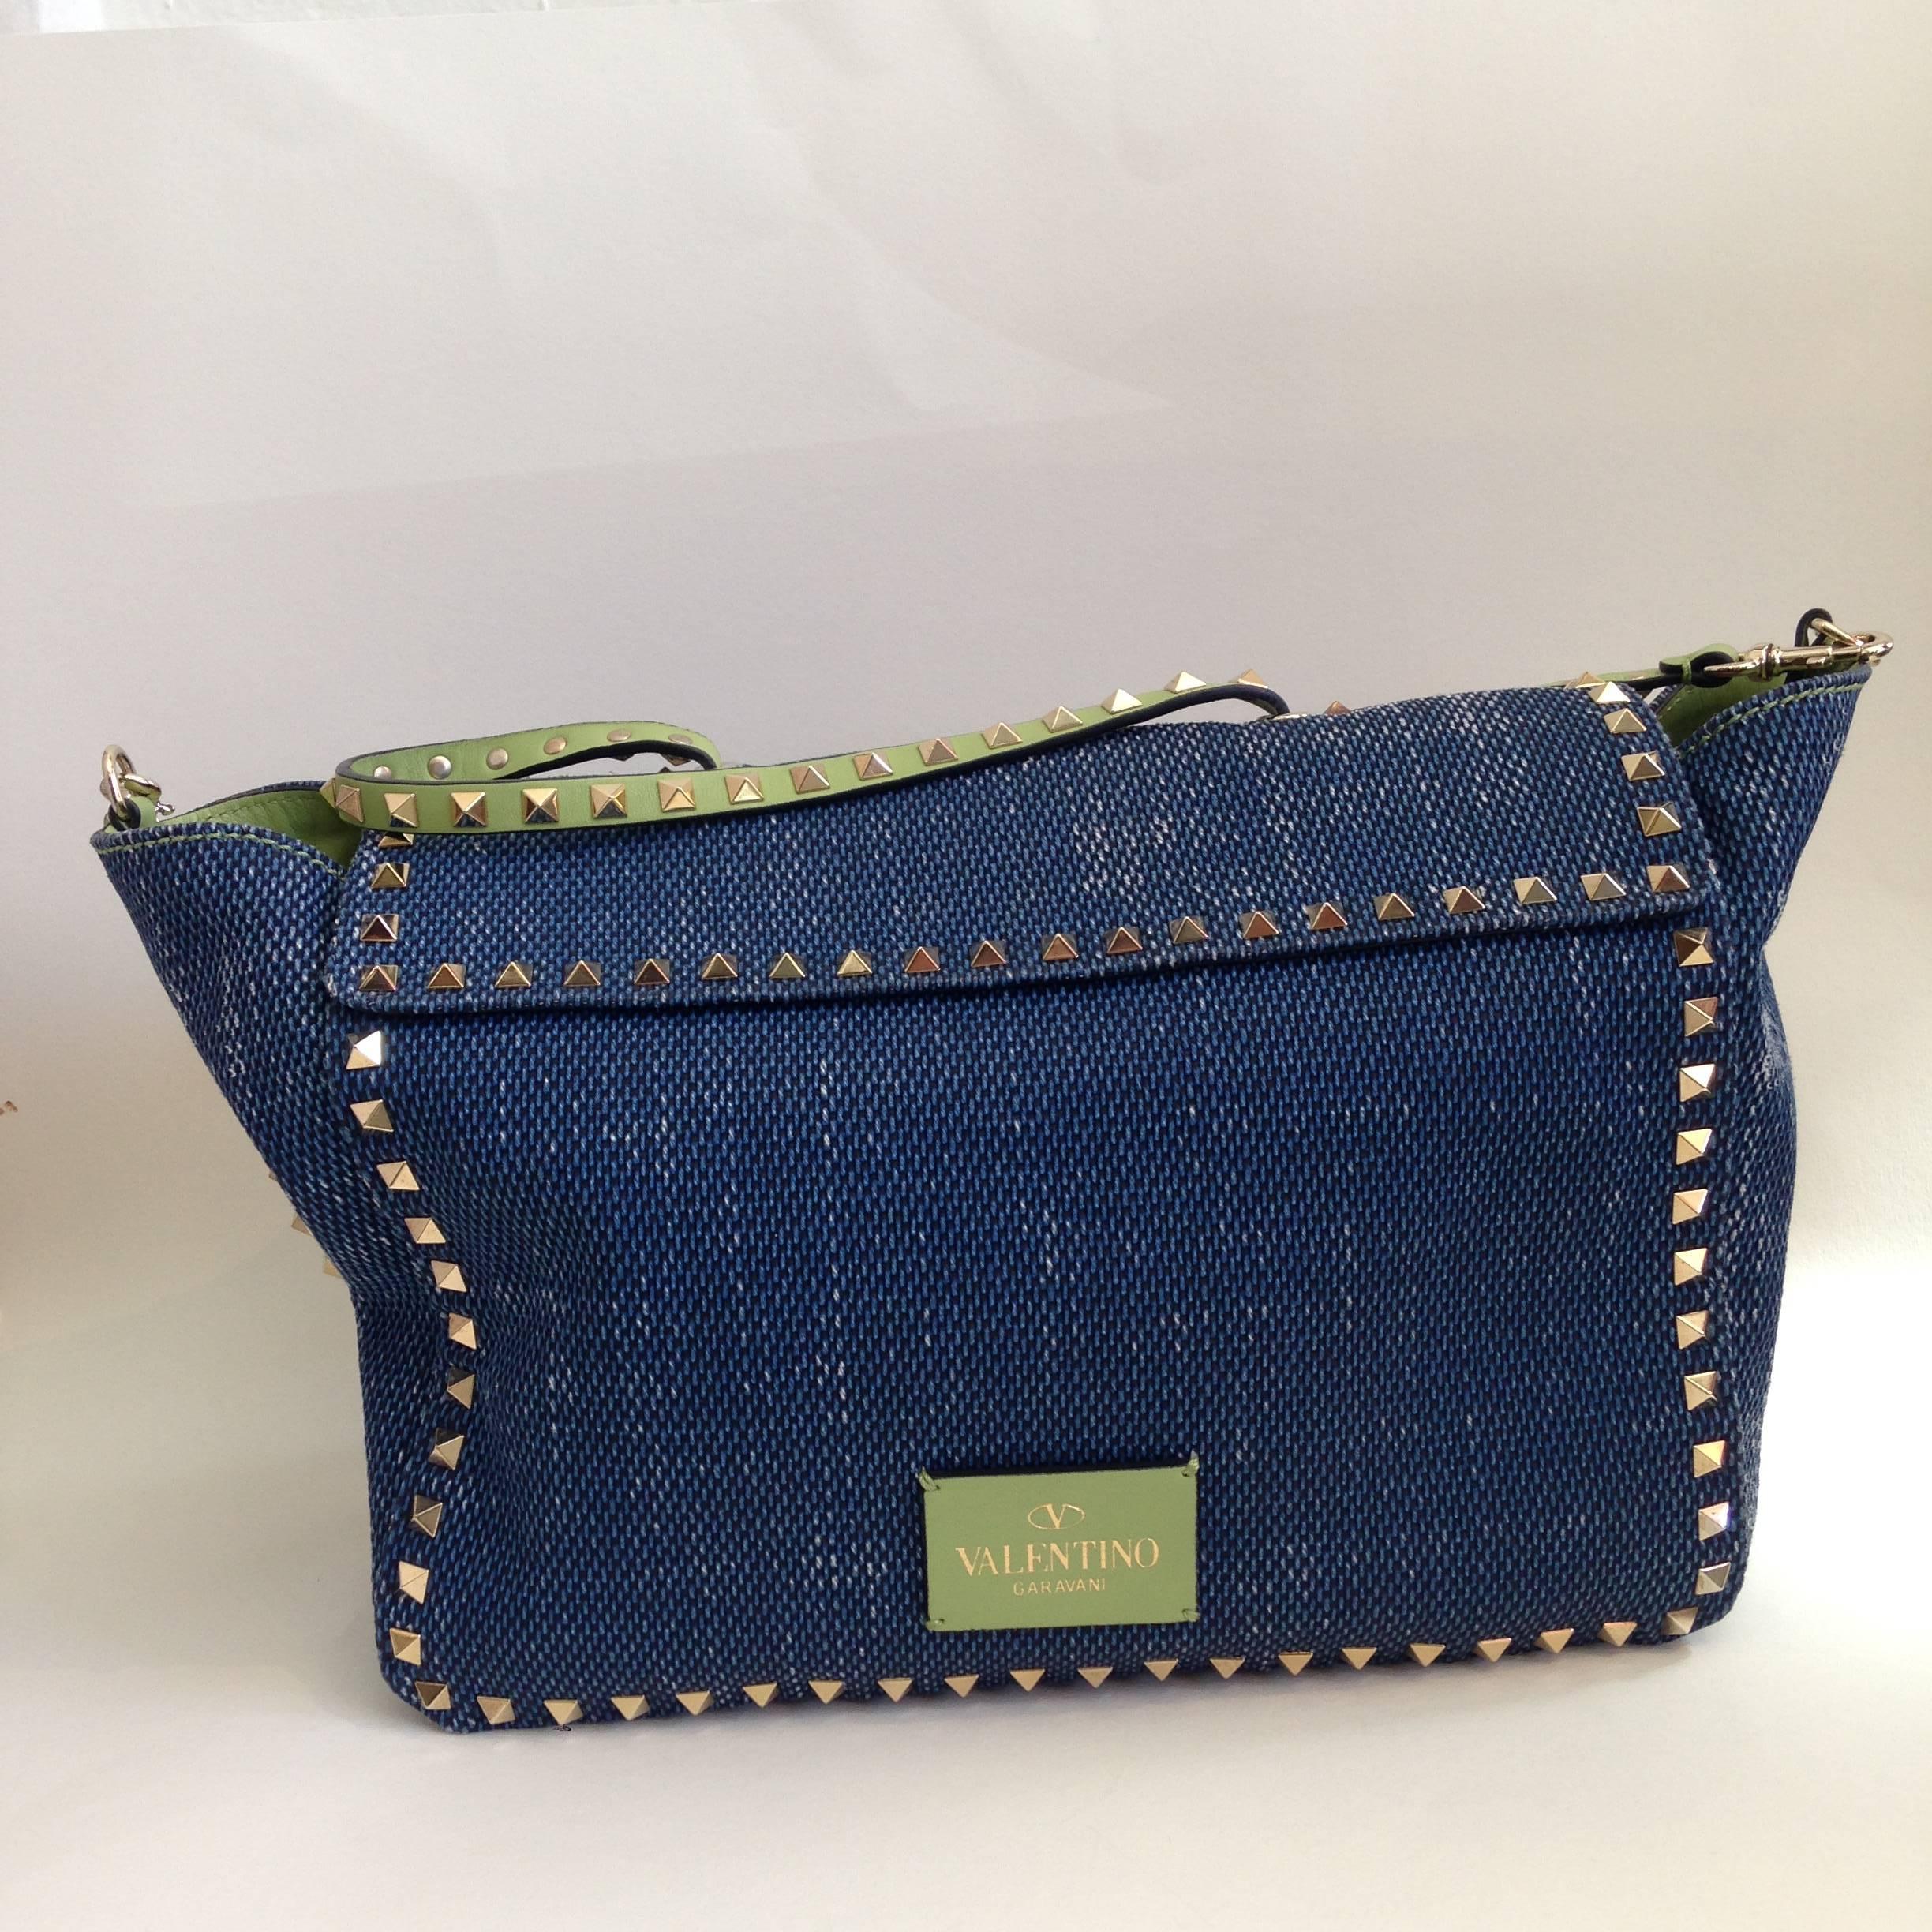 Valentino Jean W/Green Strap Handbag In Good Condition For Sale In San Francisco, CA